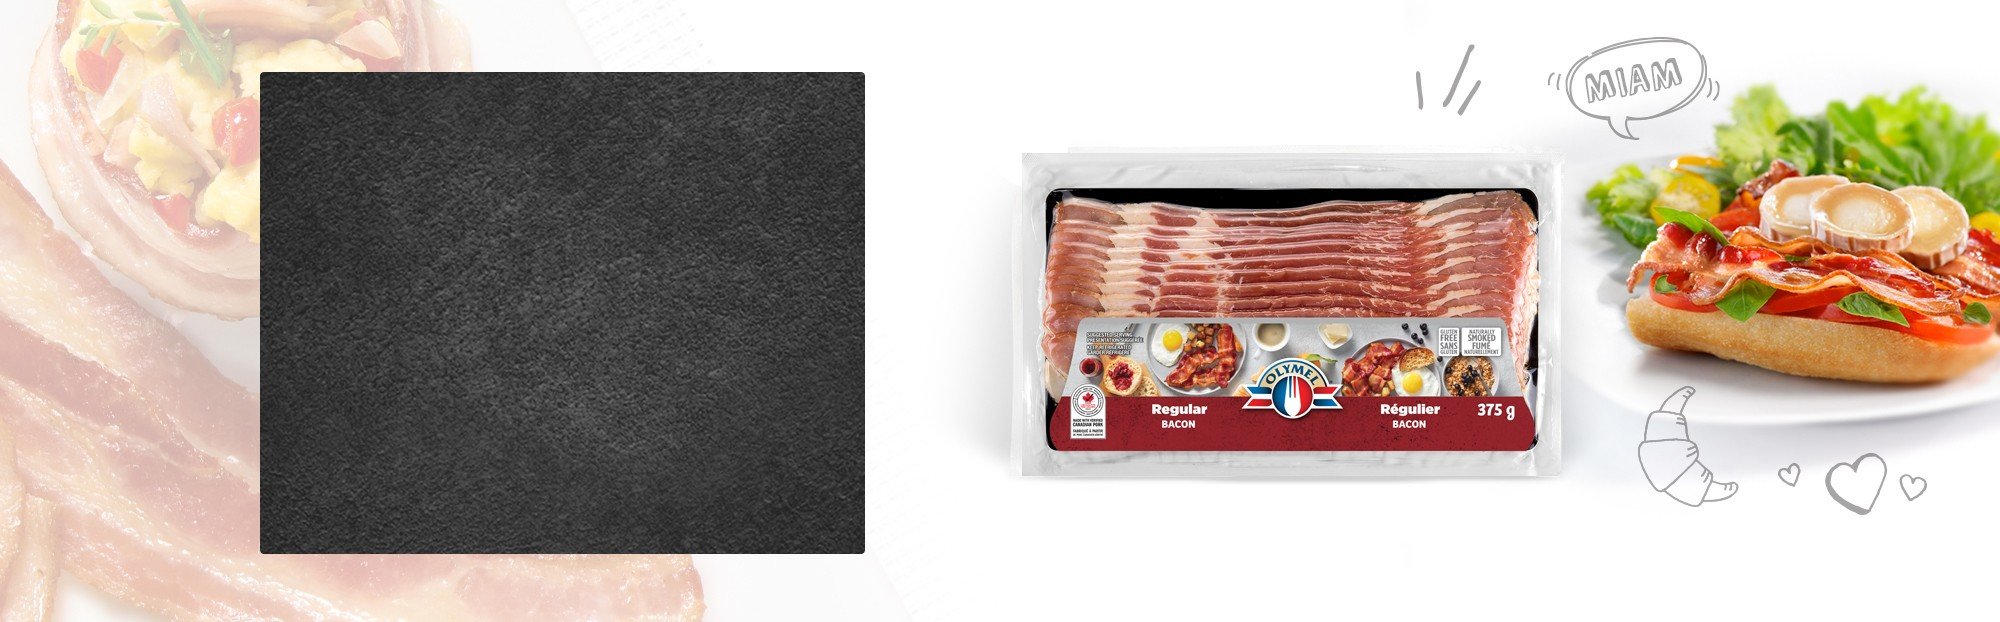 Bacon fumé naturellement